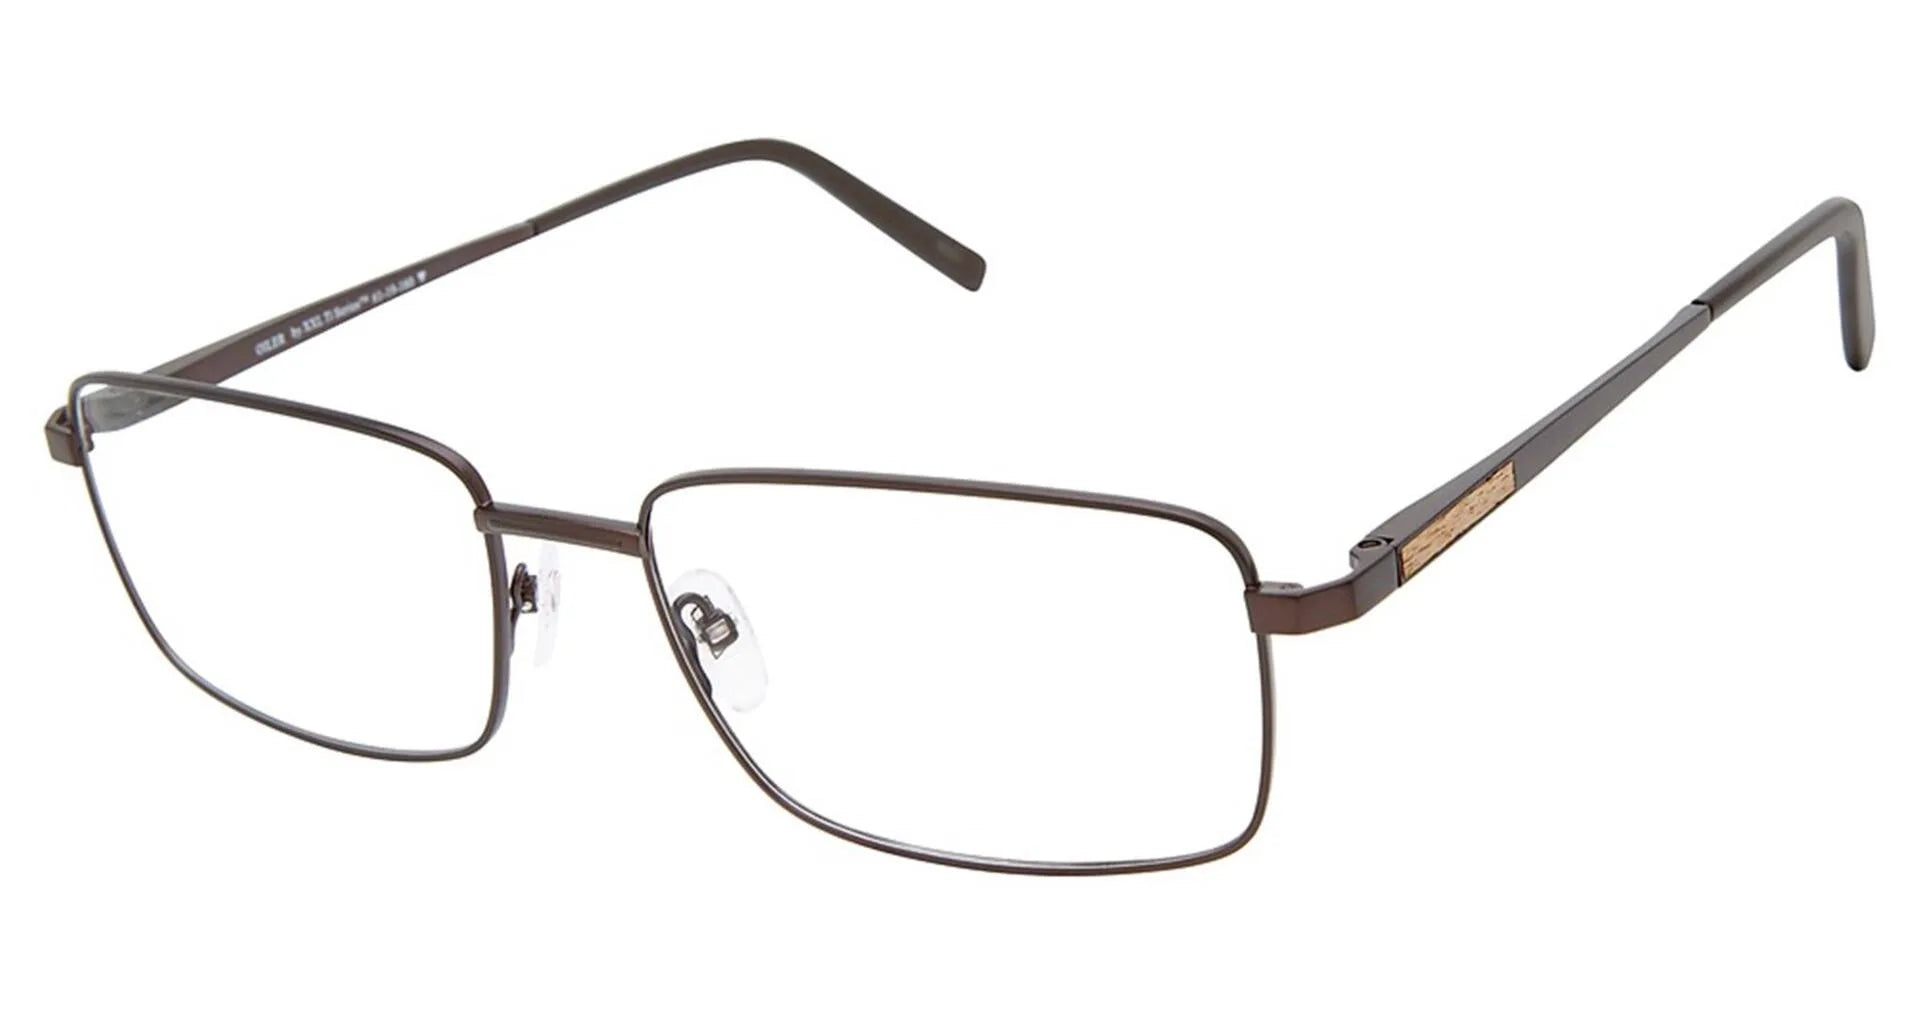 XXL Eyewear Oiler Eyeglasses Brown